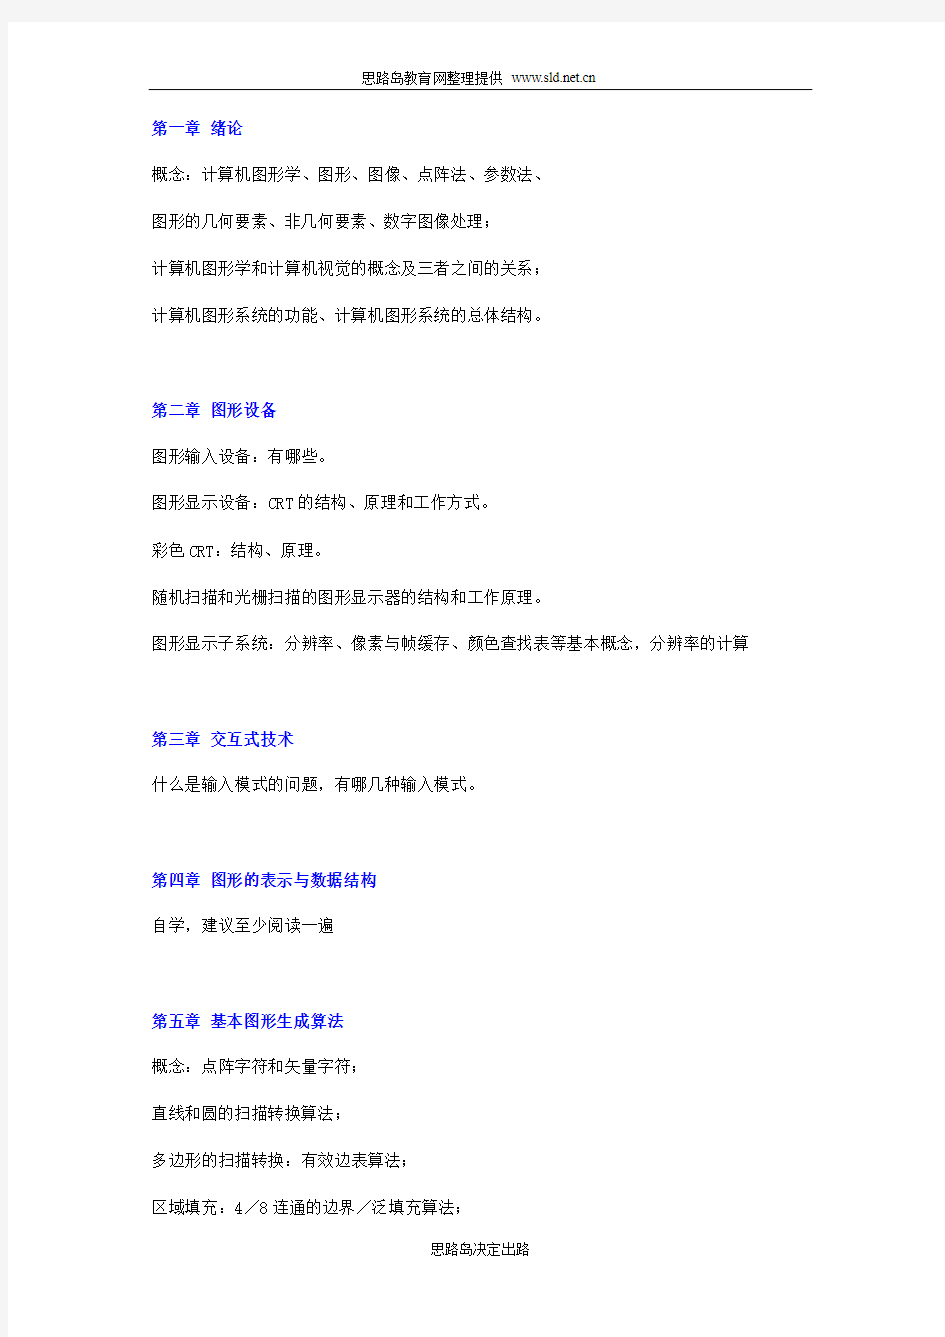 《计算机图形学基础》第2版(陆枫 何云峰)课后习题答案 电子工业出版社